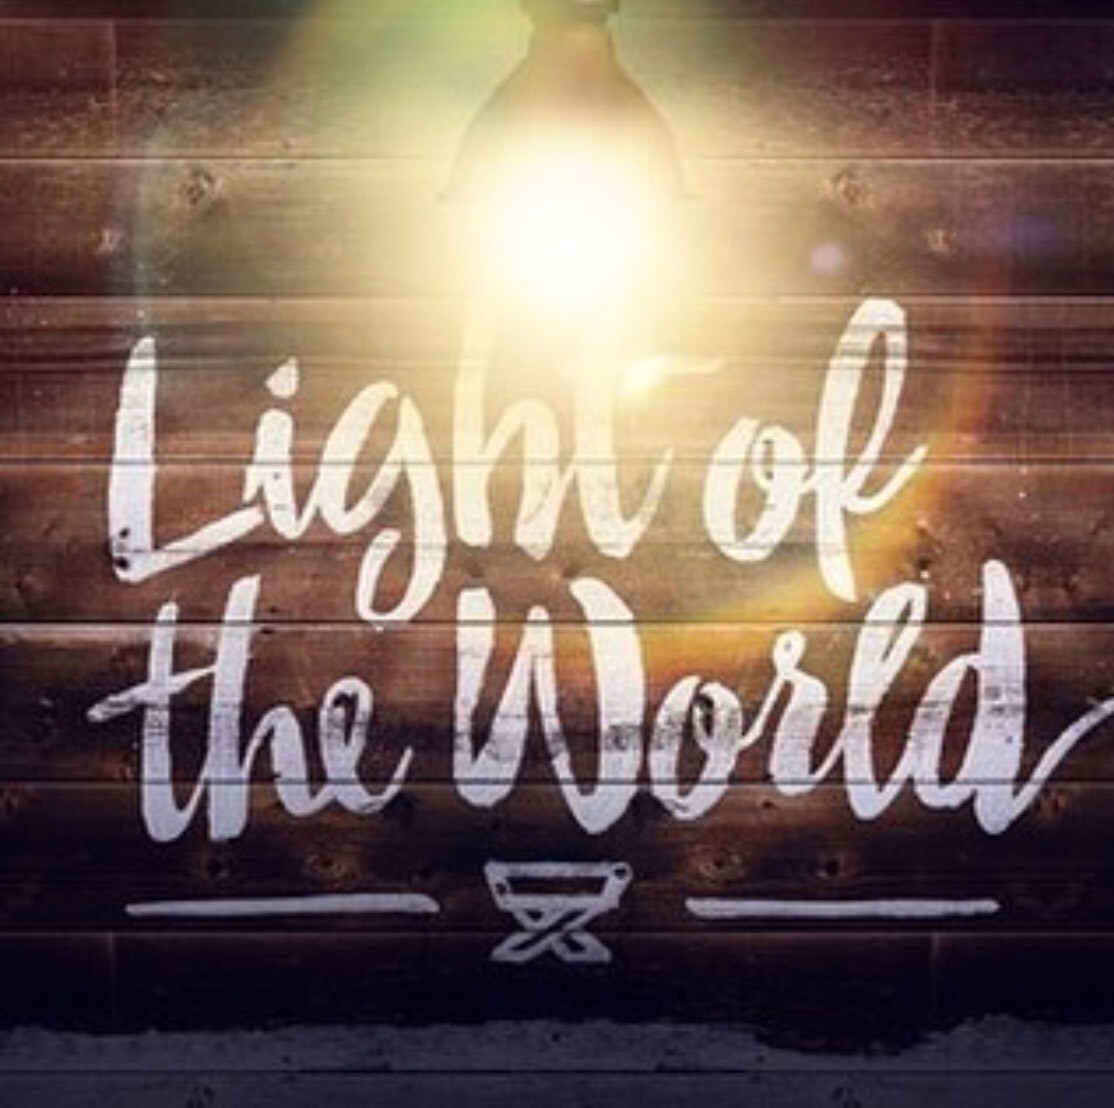 Light_of_the_world.jpg